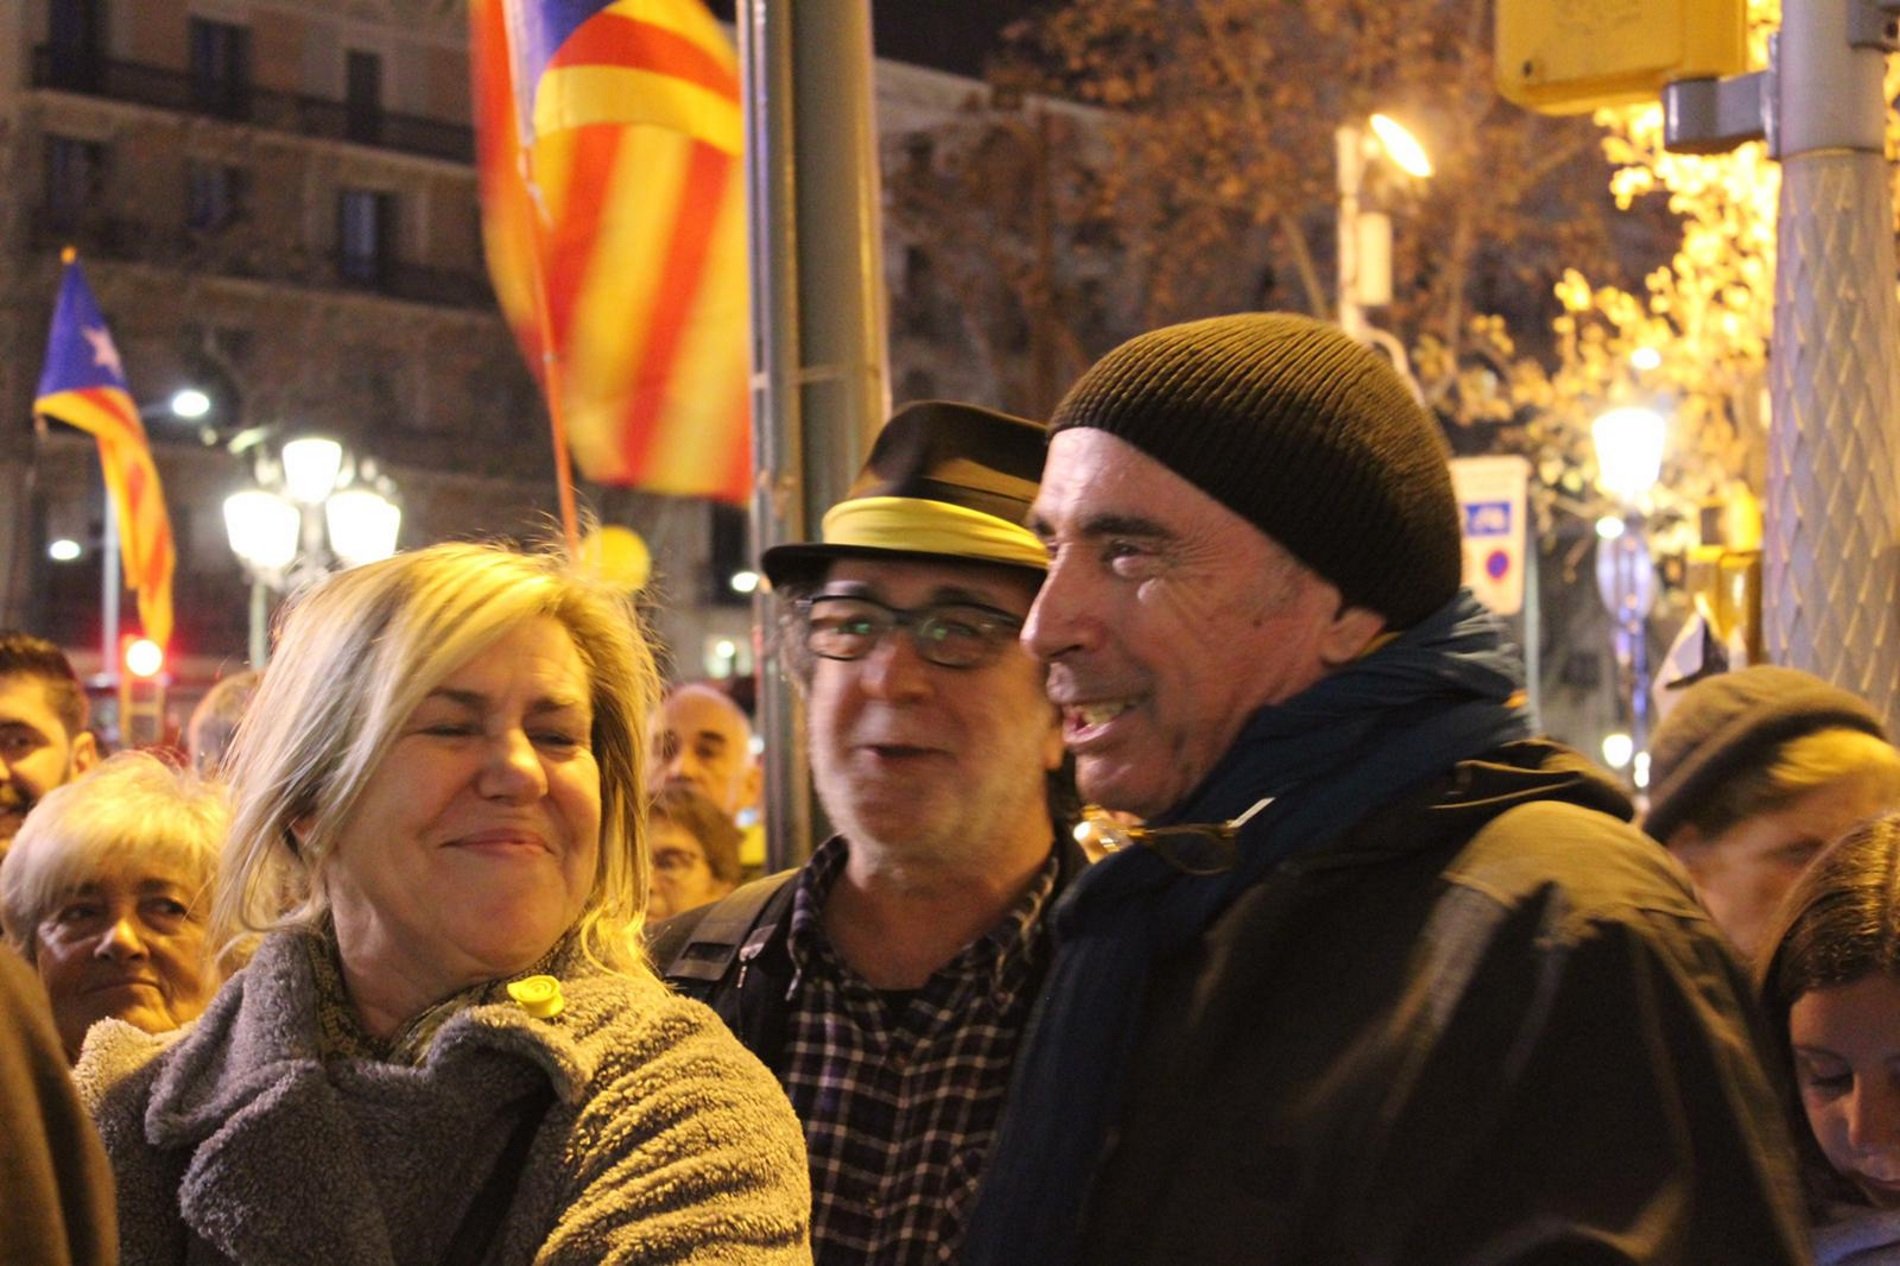 La petición severa de Lluís Llach a los dirigentes políticos